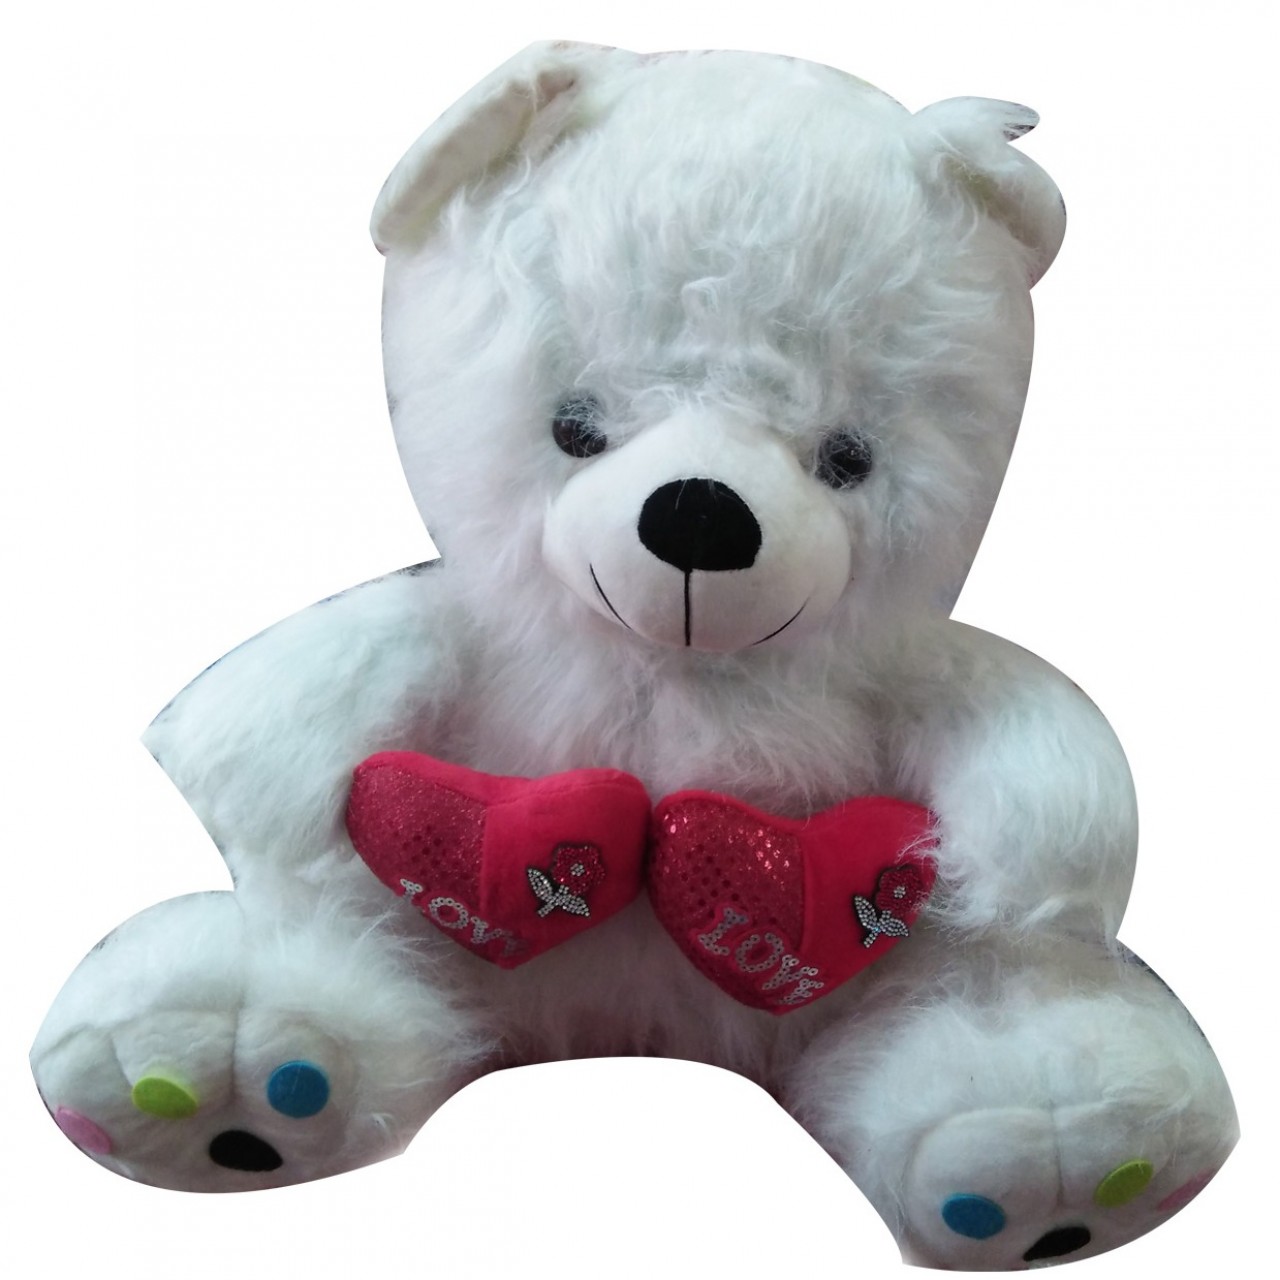 Teddy Bear For Little Kids - White